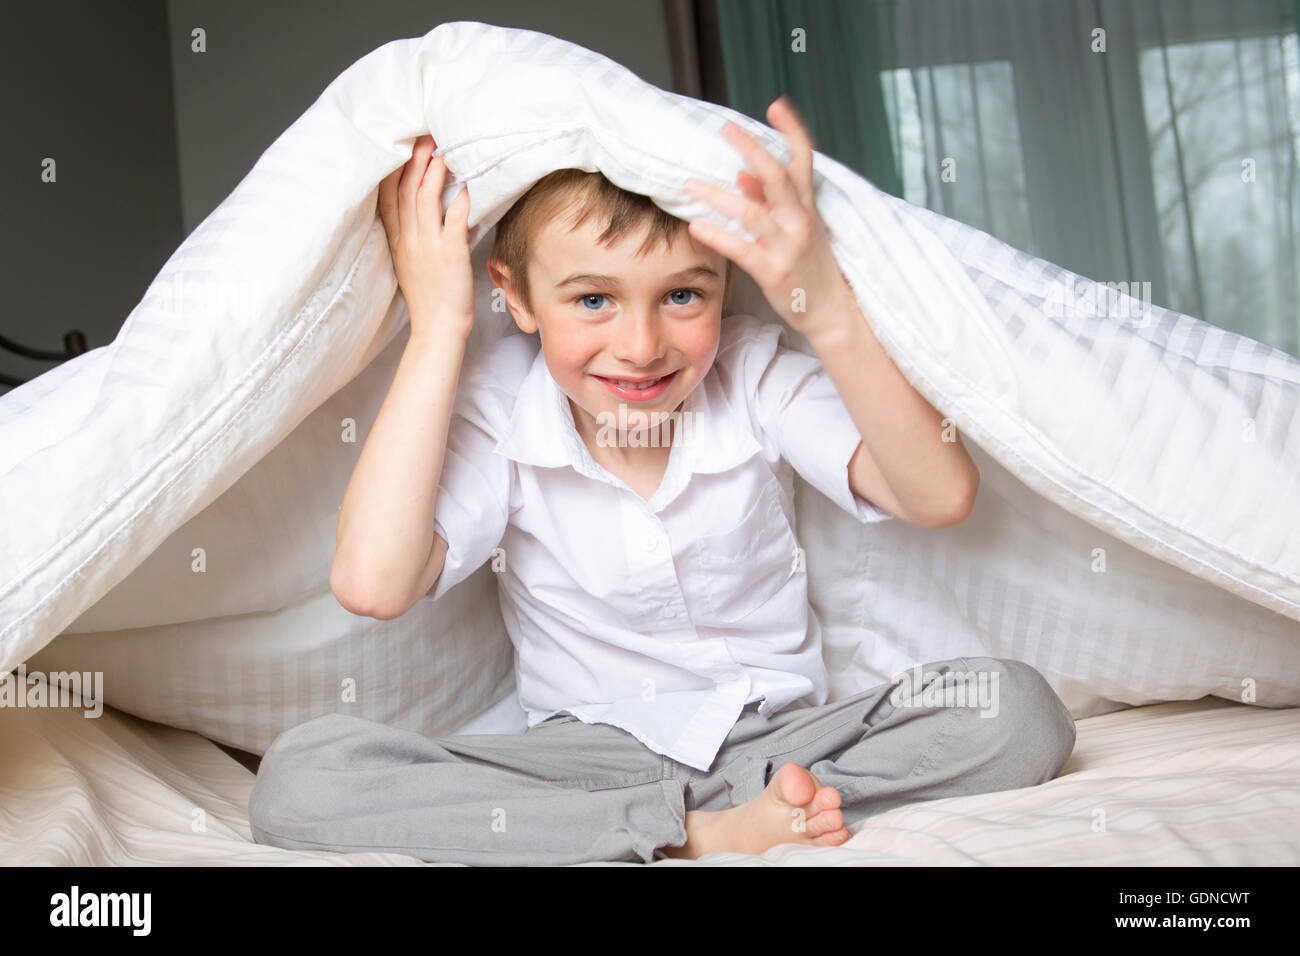 Lächelnde junge im Bett unter einer weißen Decke Tagesdecke versteckt. Stockfoto